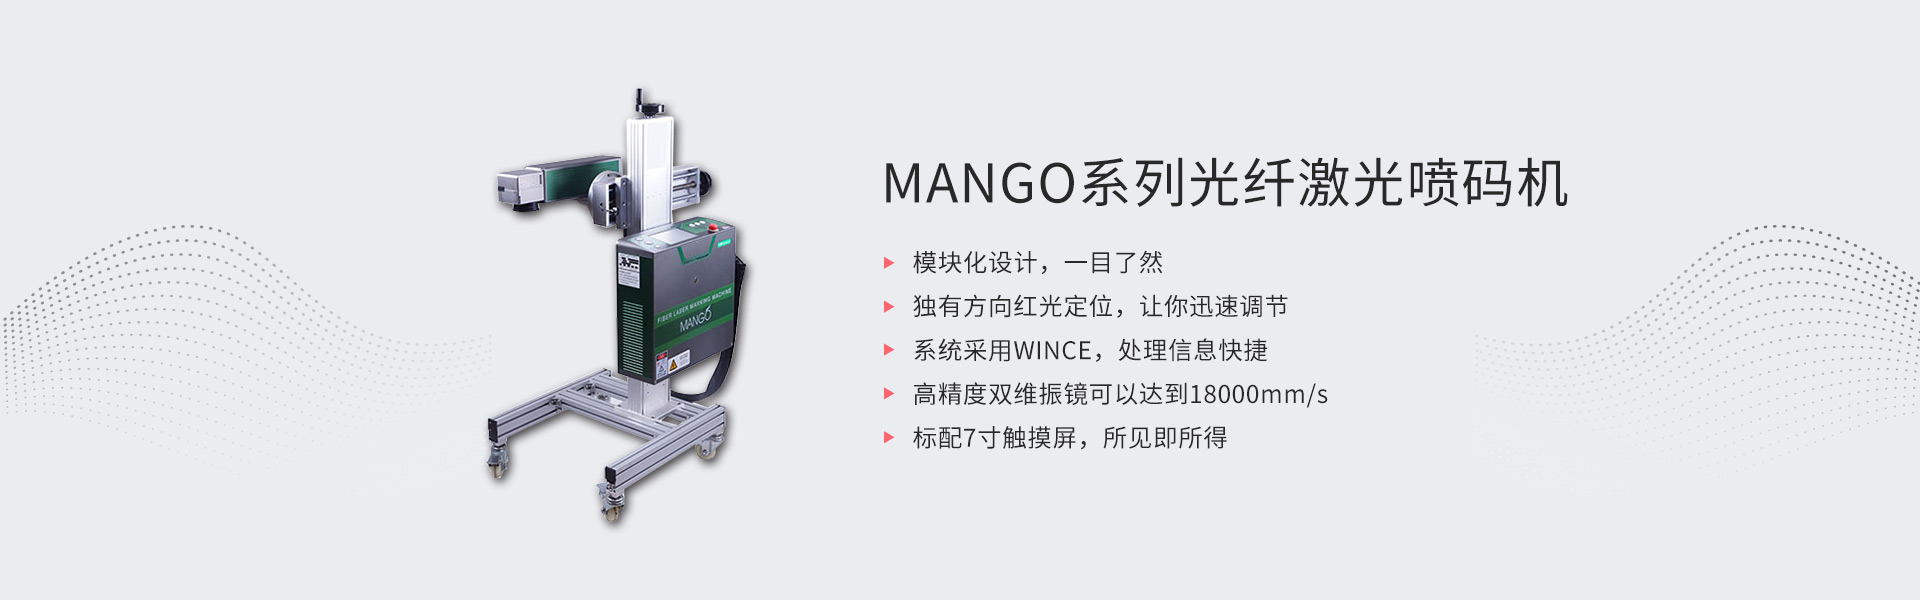 MANGO系列光纤激光喷码机(图1)